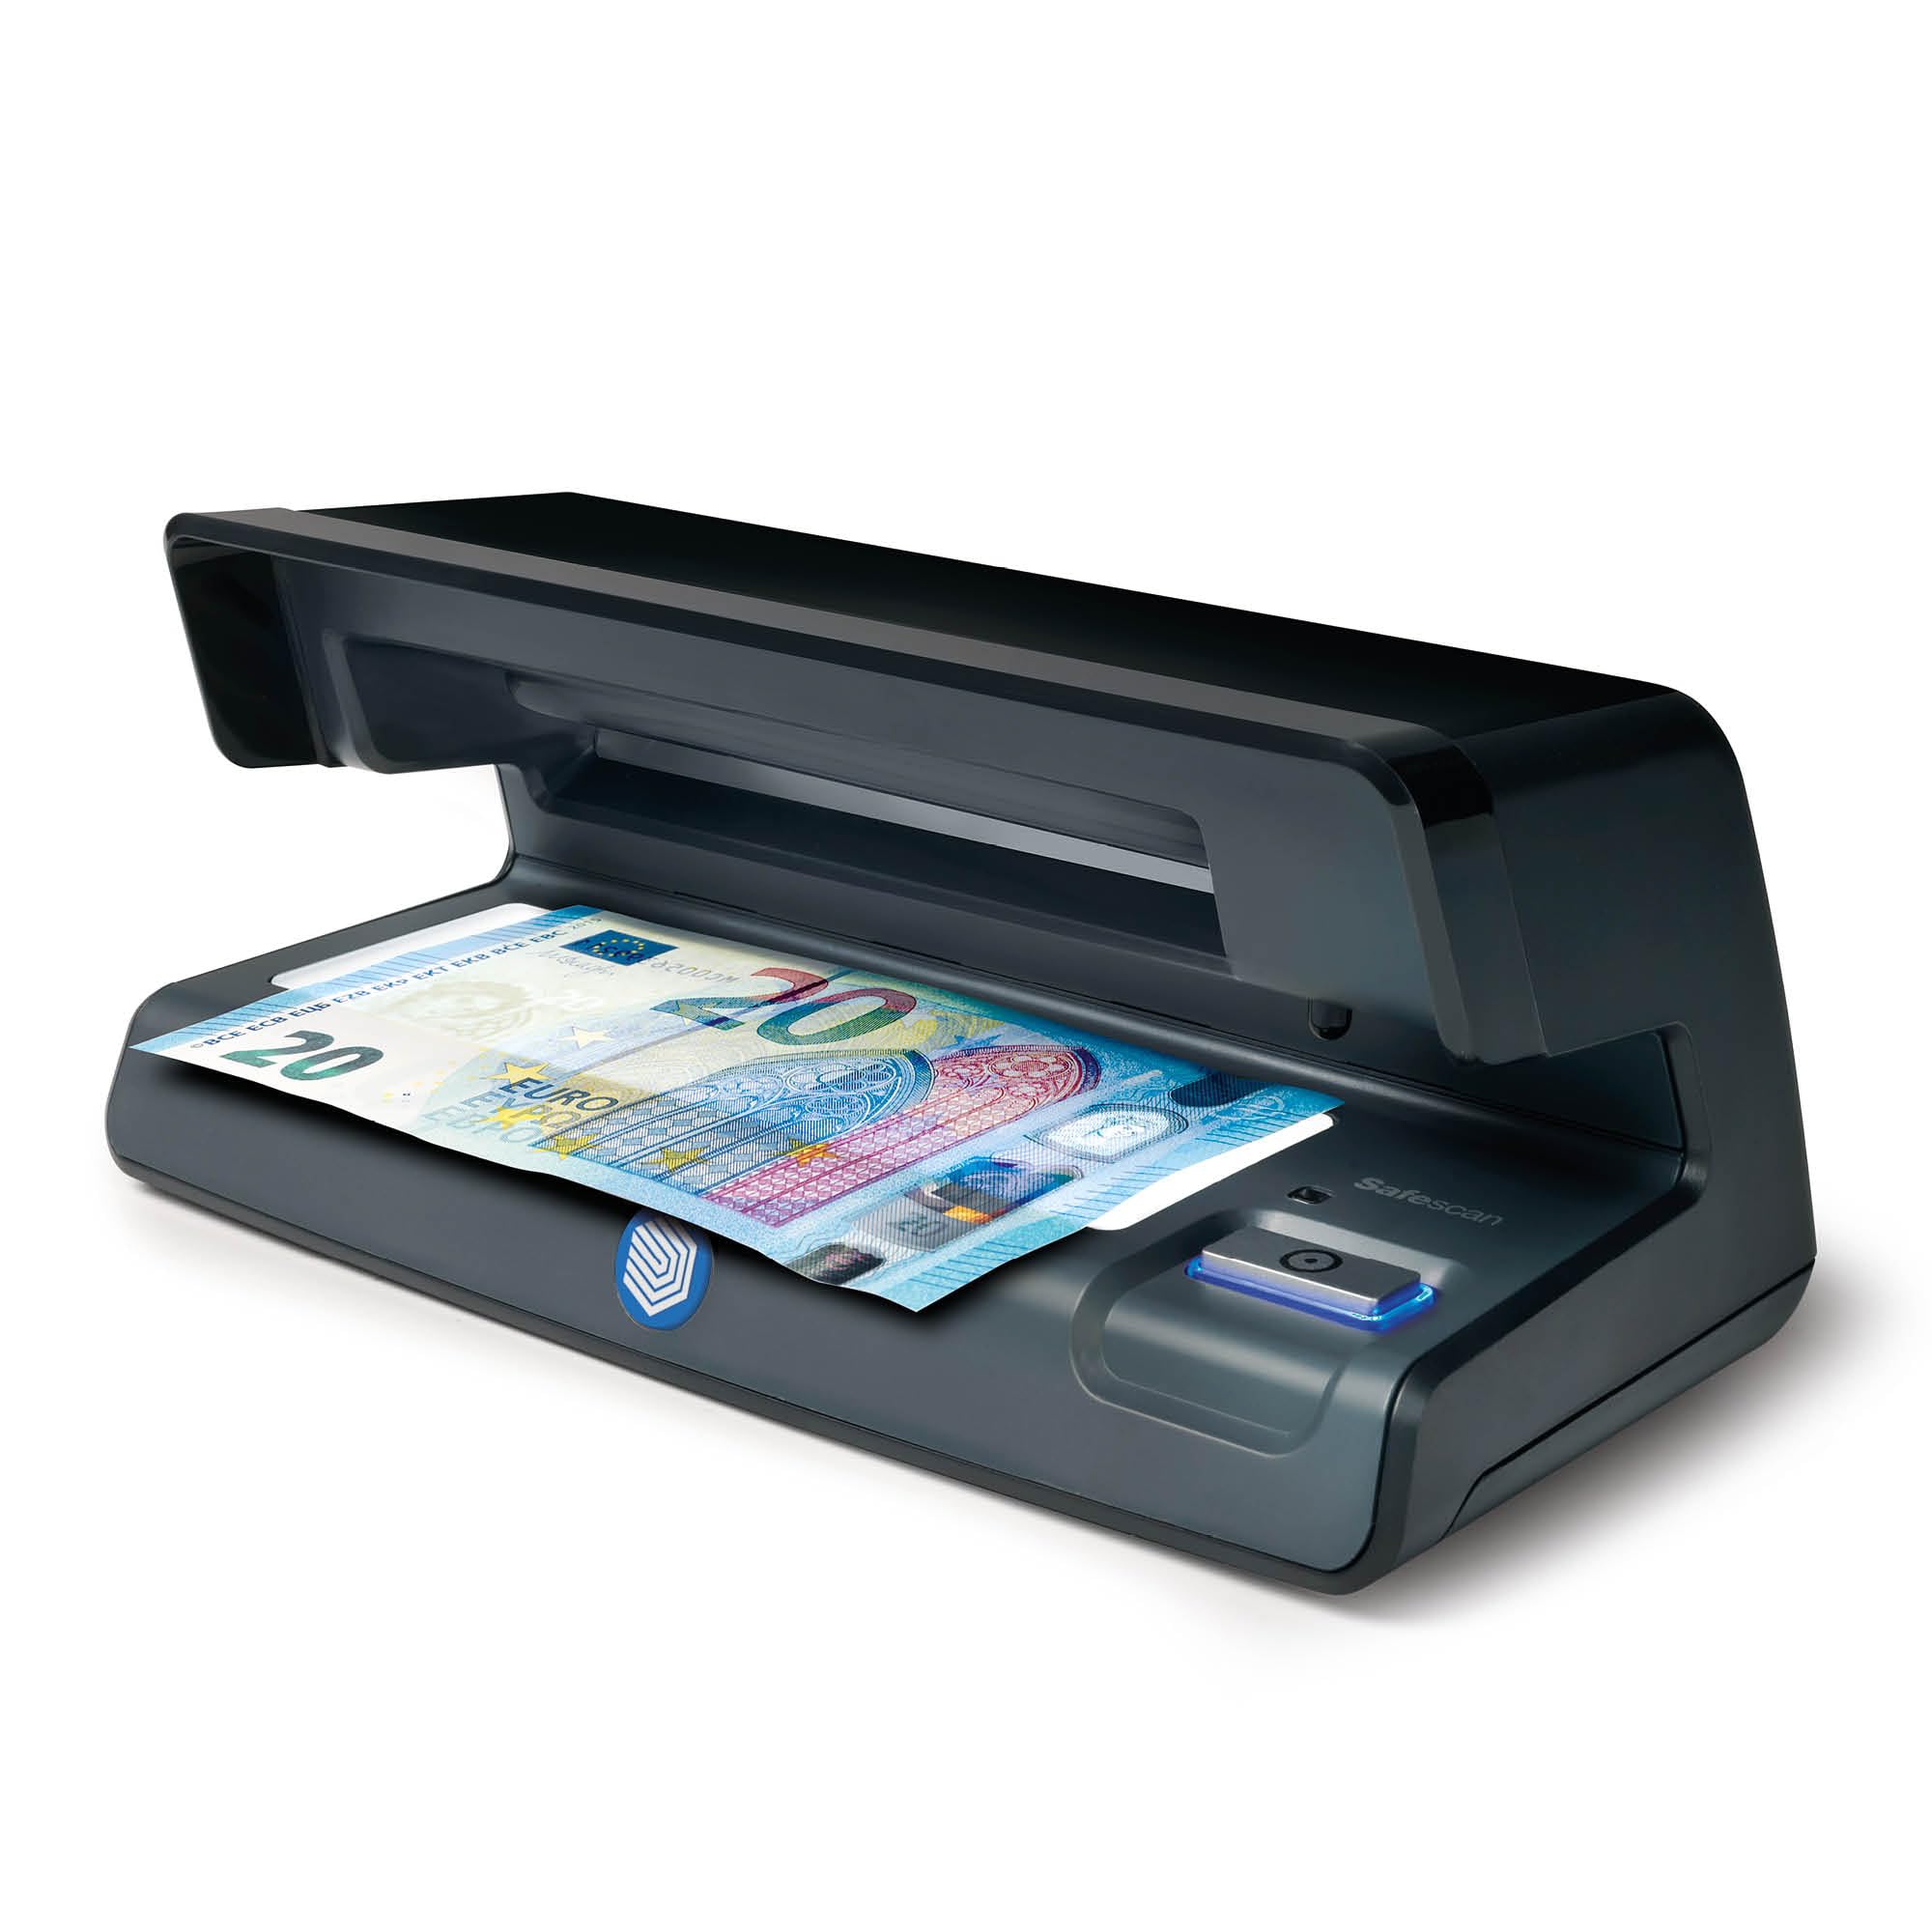 Safescan 70 UV-Falschgeldprüfgerät zur Prüfung von Banknoten, Kreditkarten und Ausweisen - UV-Geldscheinprüfer für neue Banknoten - UV-Falschgeldprüfgerät mit Weisslicht - UV-Geldscheinprüfer